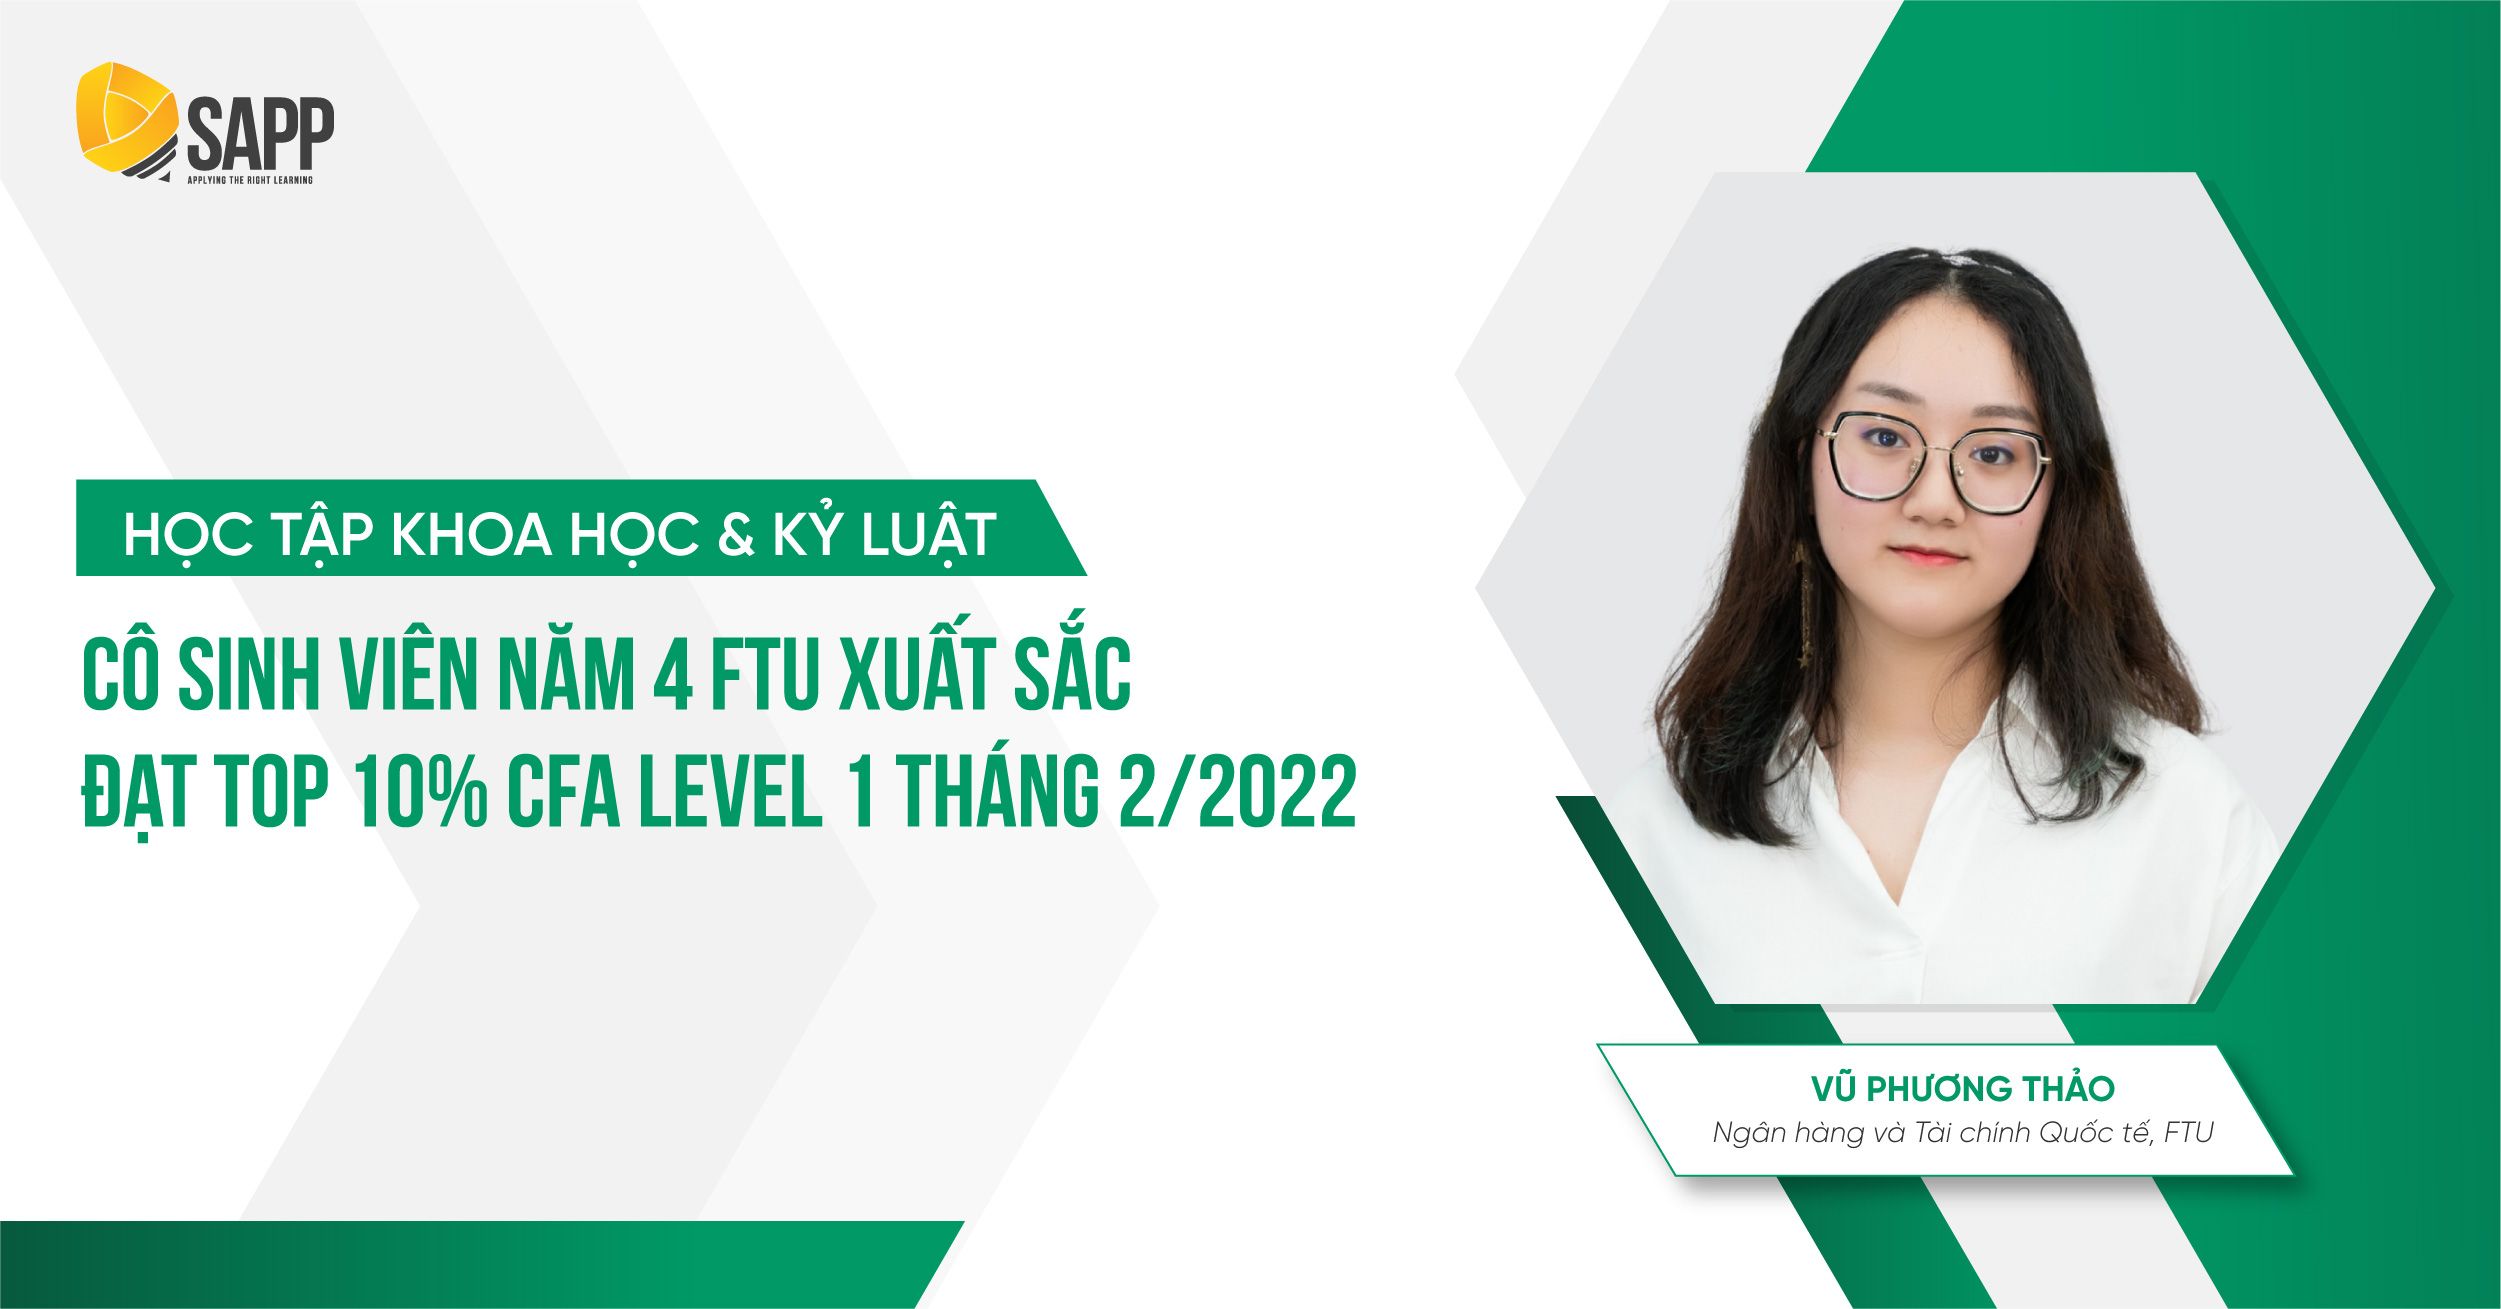 Học tập khoa học & kỷ luật: Cô sinh viên năm 4 FTU xuất sắc đạt top 10% CFA Level 1 tháng 2/2022